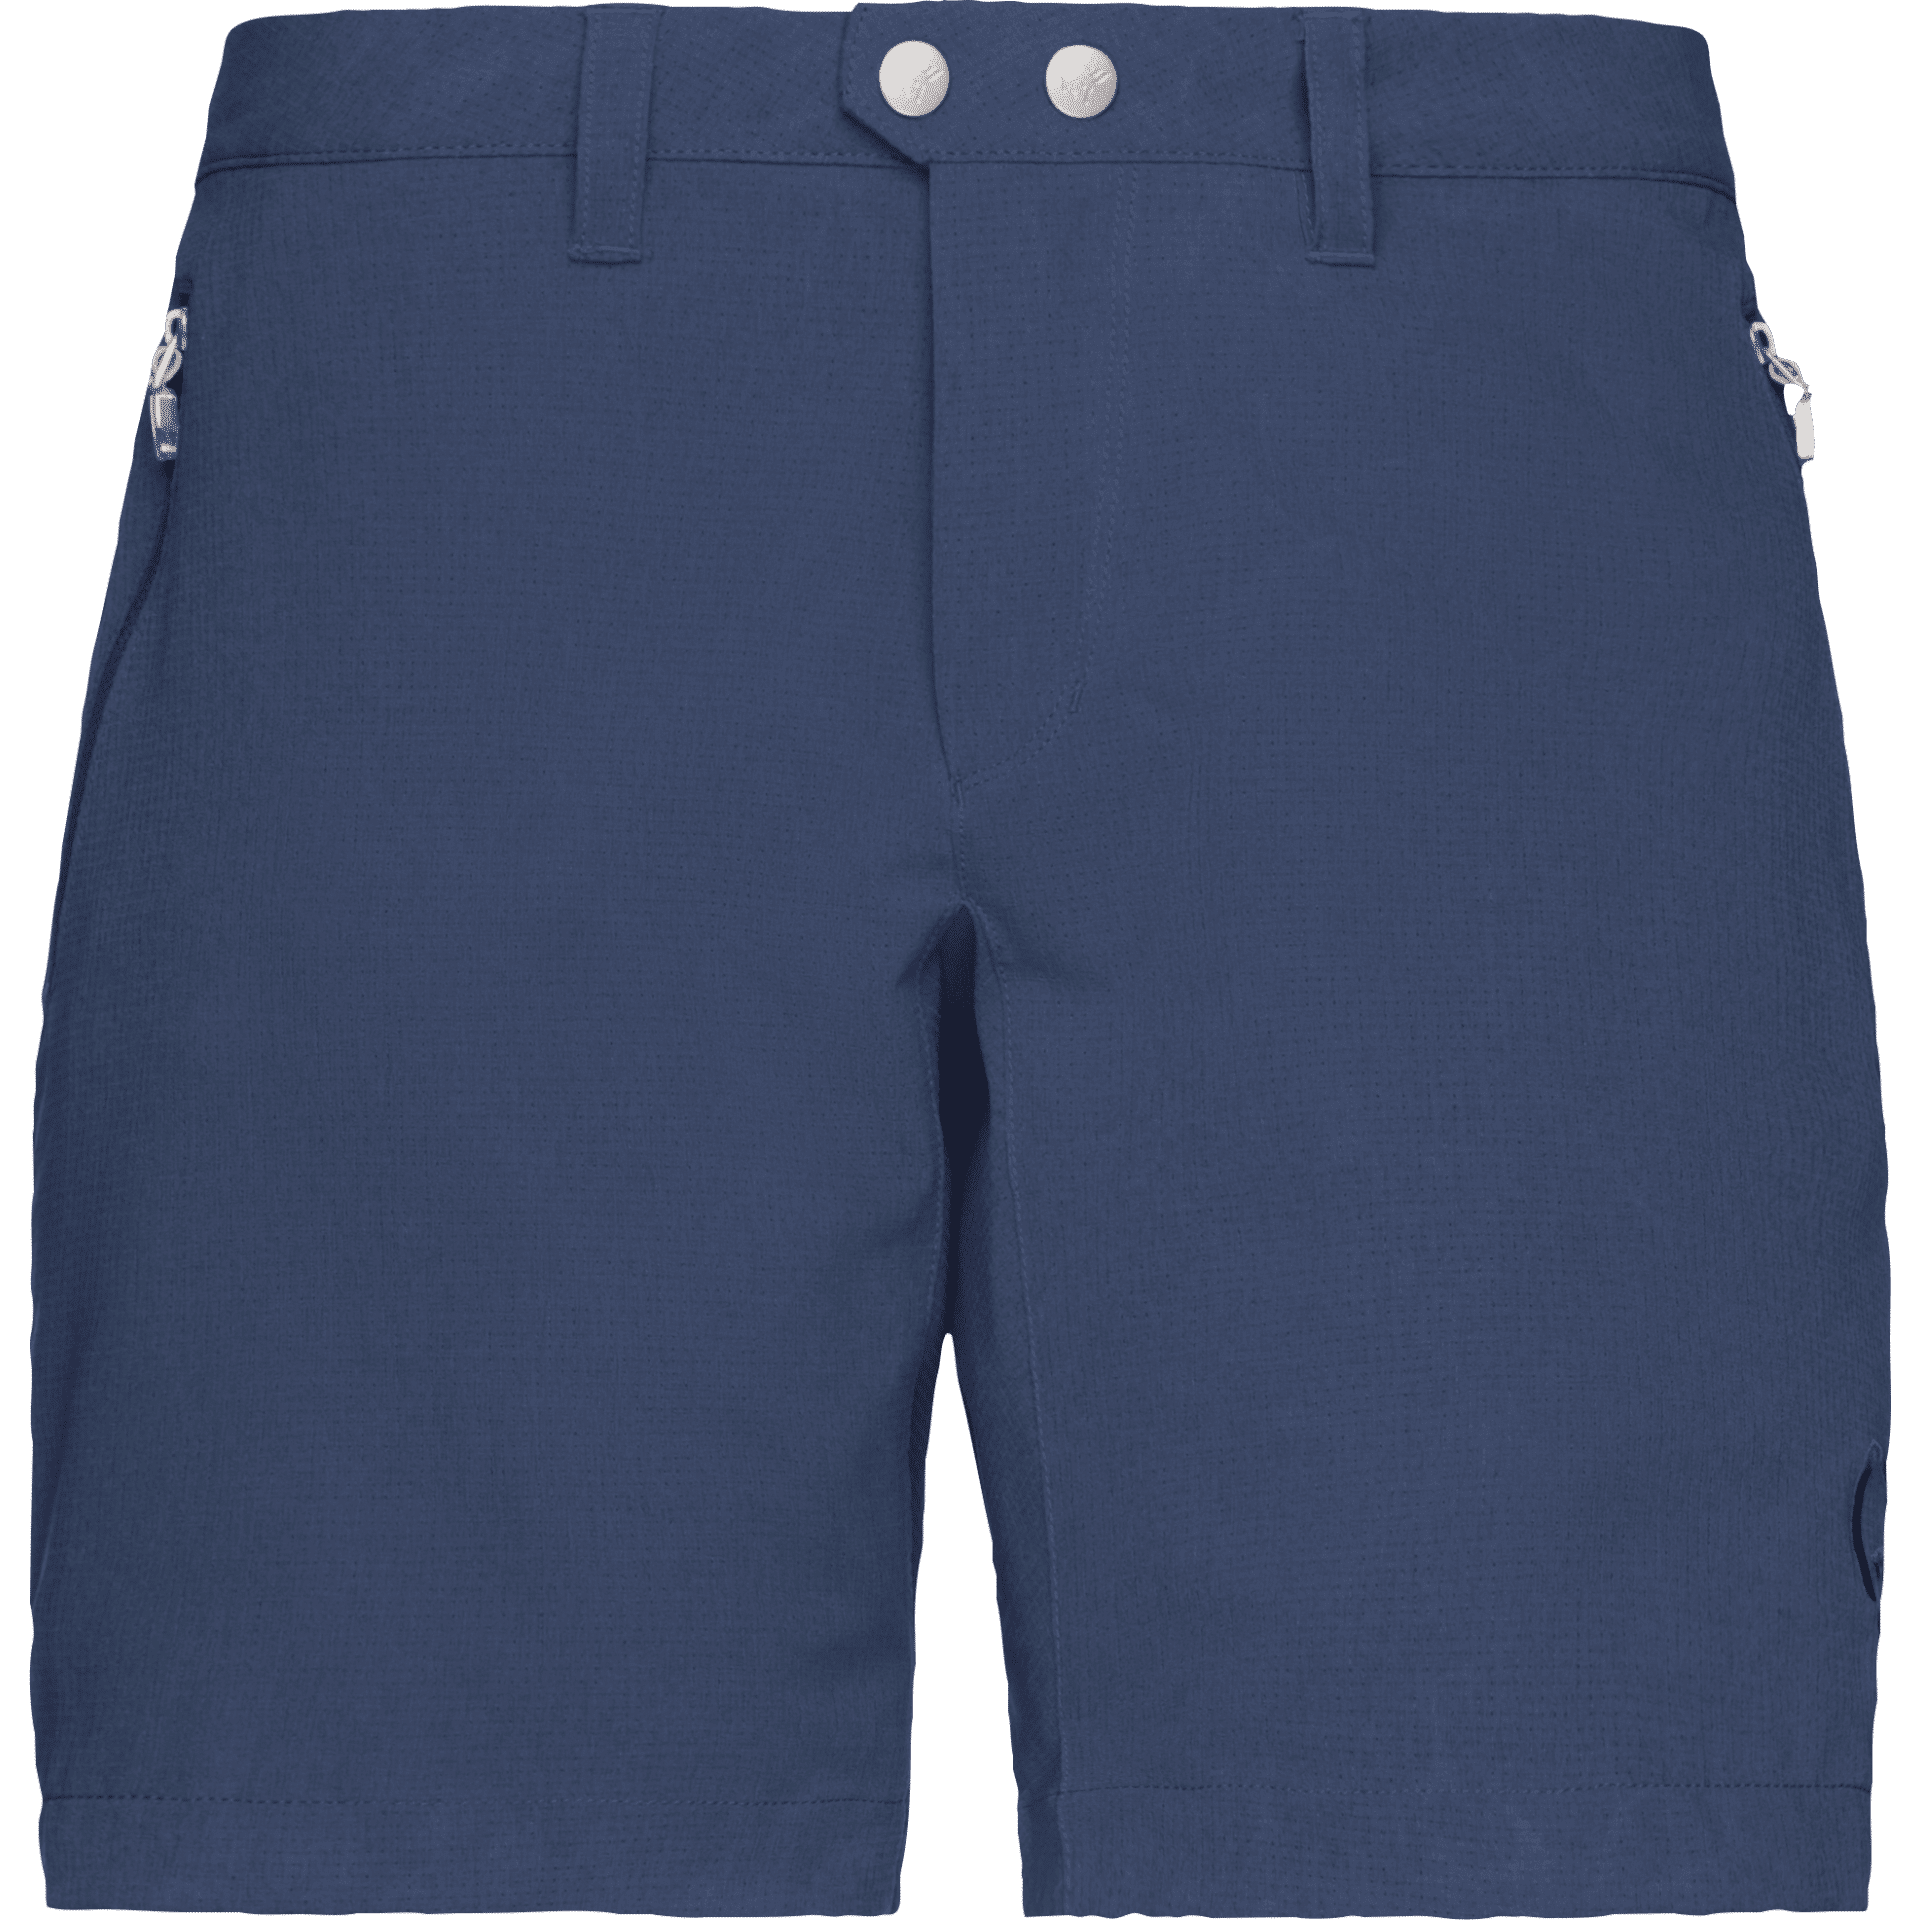 Norrøna Bitihorn Flex1 Shorts - Hiking shorts - Women's